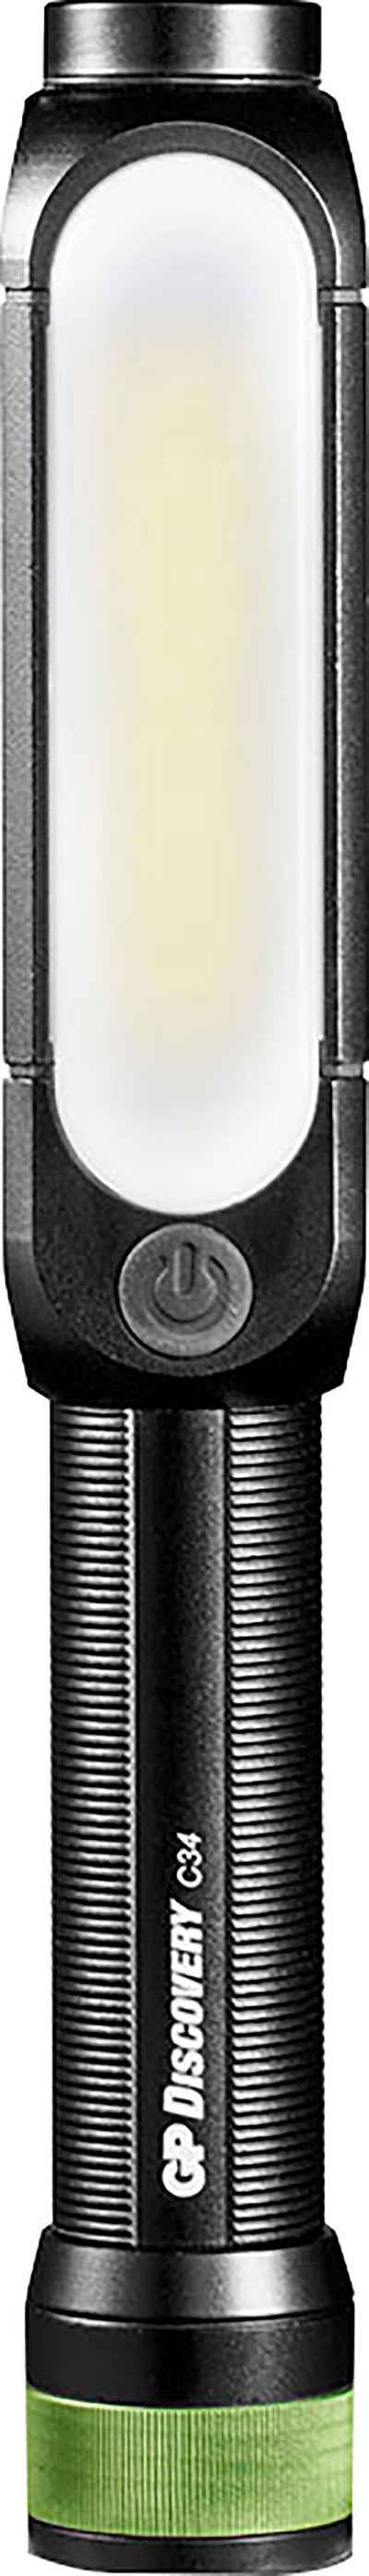 GP Batteries Taschenlampe Discovery C34, Front 150 Lumen & seitlich 180 Lumen, magnetische Endkappe